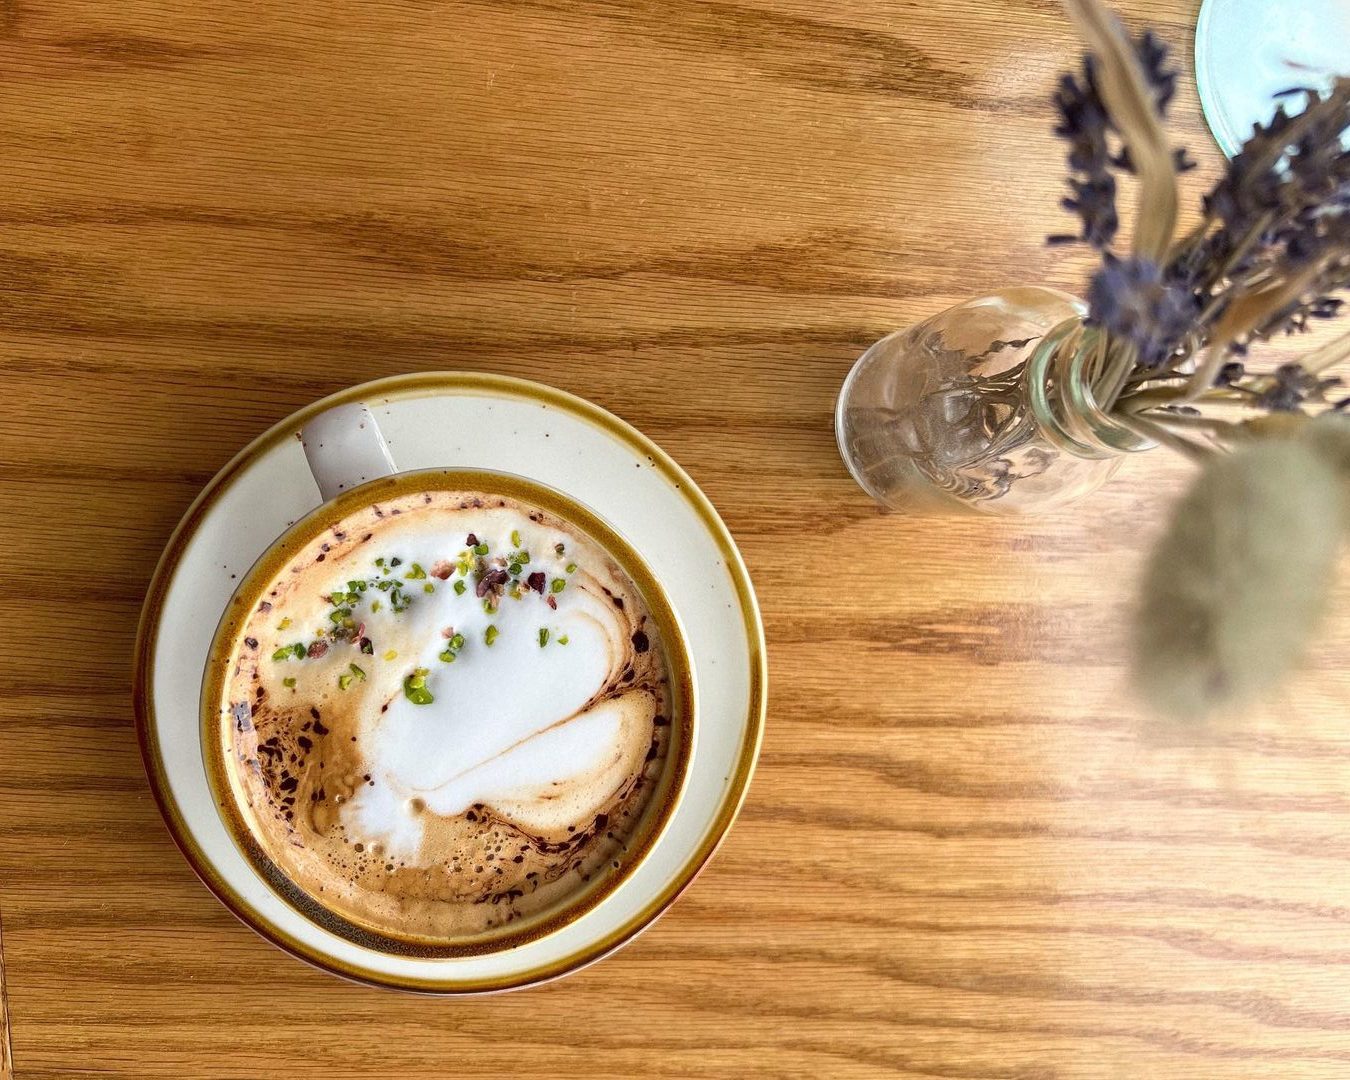 pistachio latte at Bird on the Roof, Montauk, NY